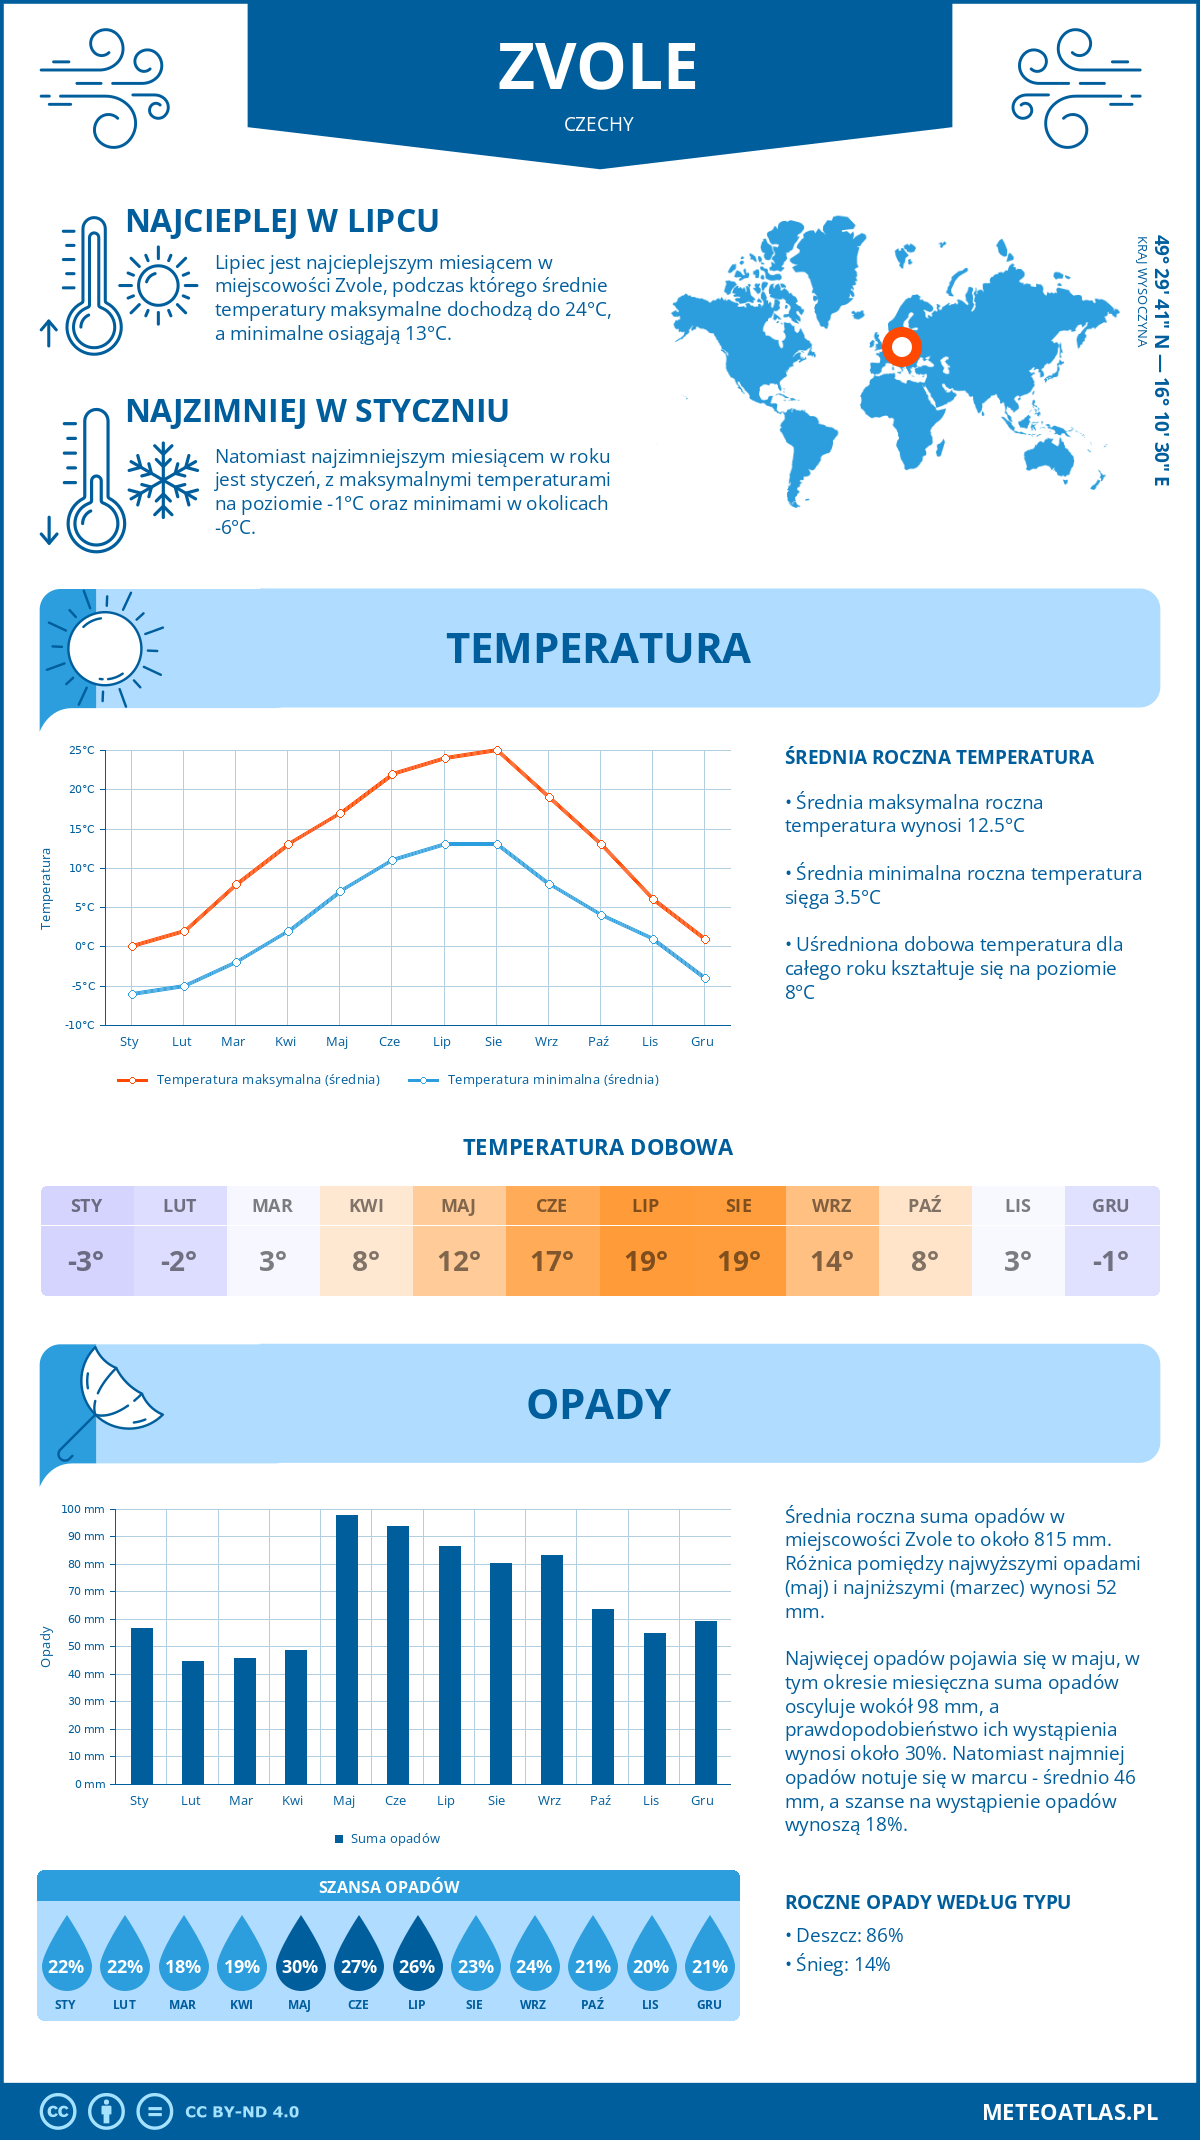 Pogoda Zvole (Czechy). Temperatura oraz opady.